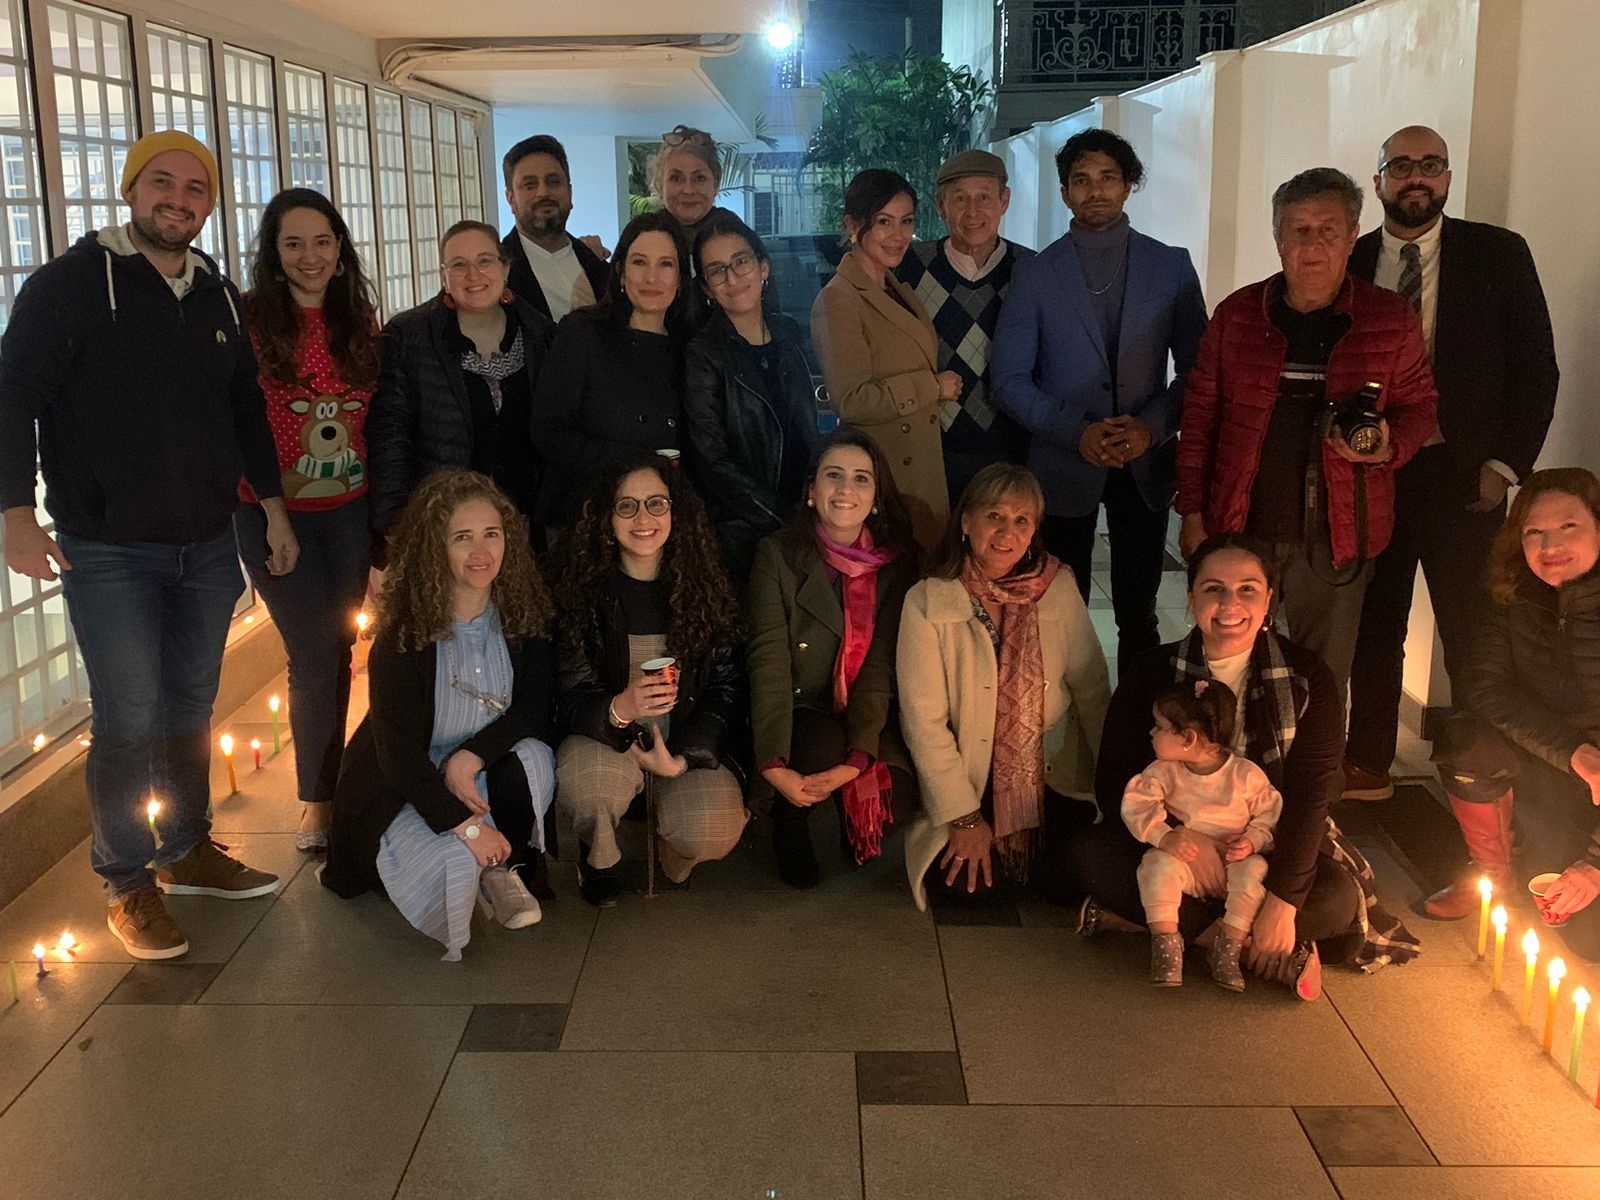 Comunidad colombiana se reunió para celebrar juntos la noche de las velitas en India